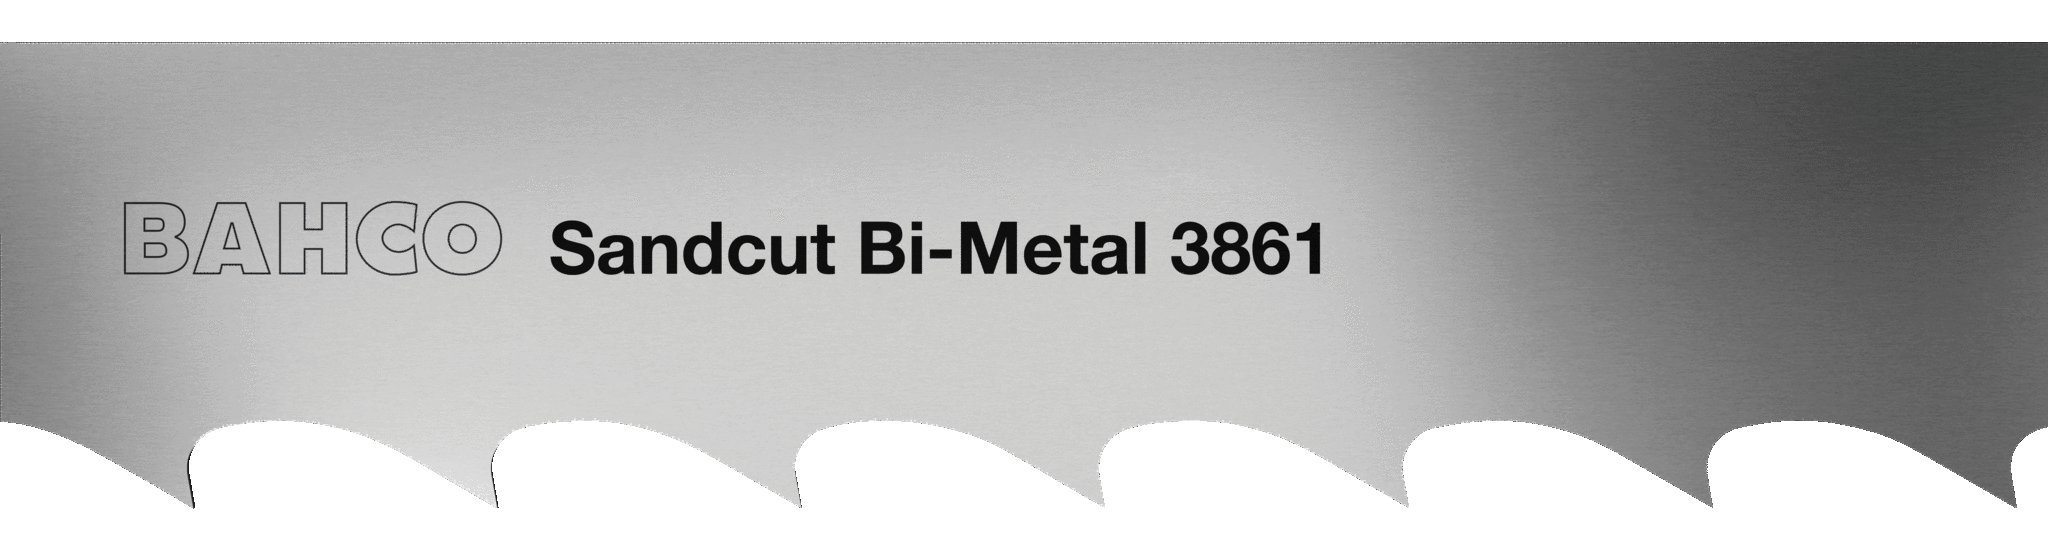      BAHCO 3861 Sandcut Bi-metal